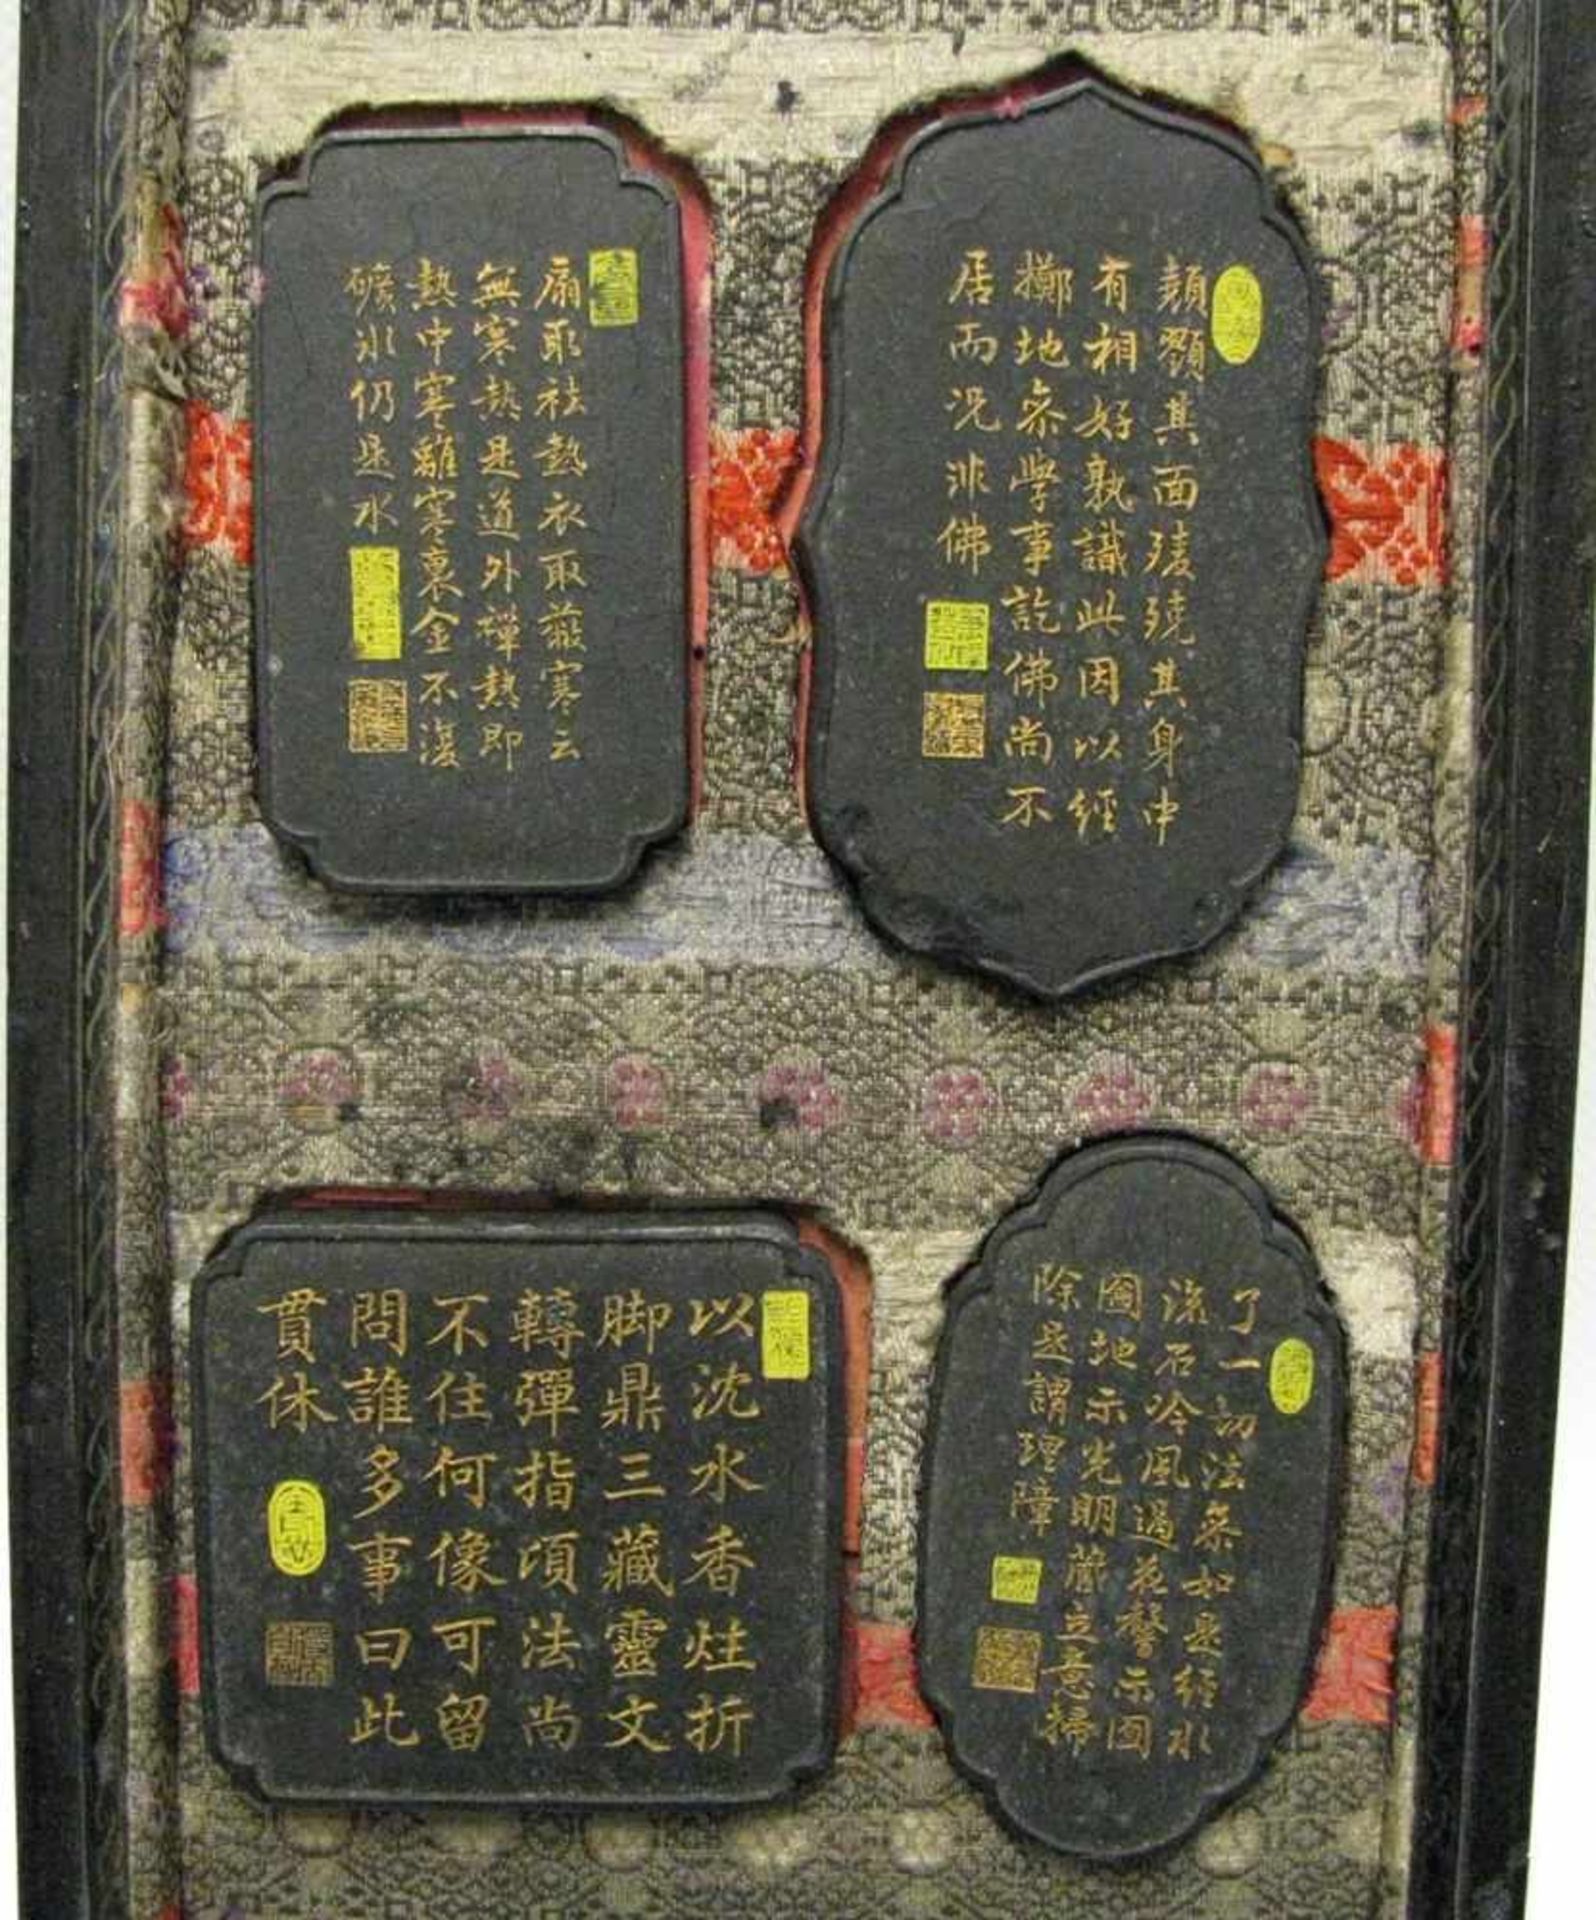 Siegeldose mit 4 Siegeln, China, antik, 24 x 16 cm, R.- - -19.00 % buyer's premium on the hammer - Bild 3 aus 3